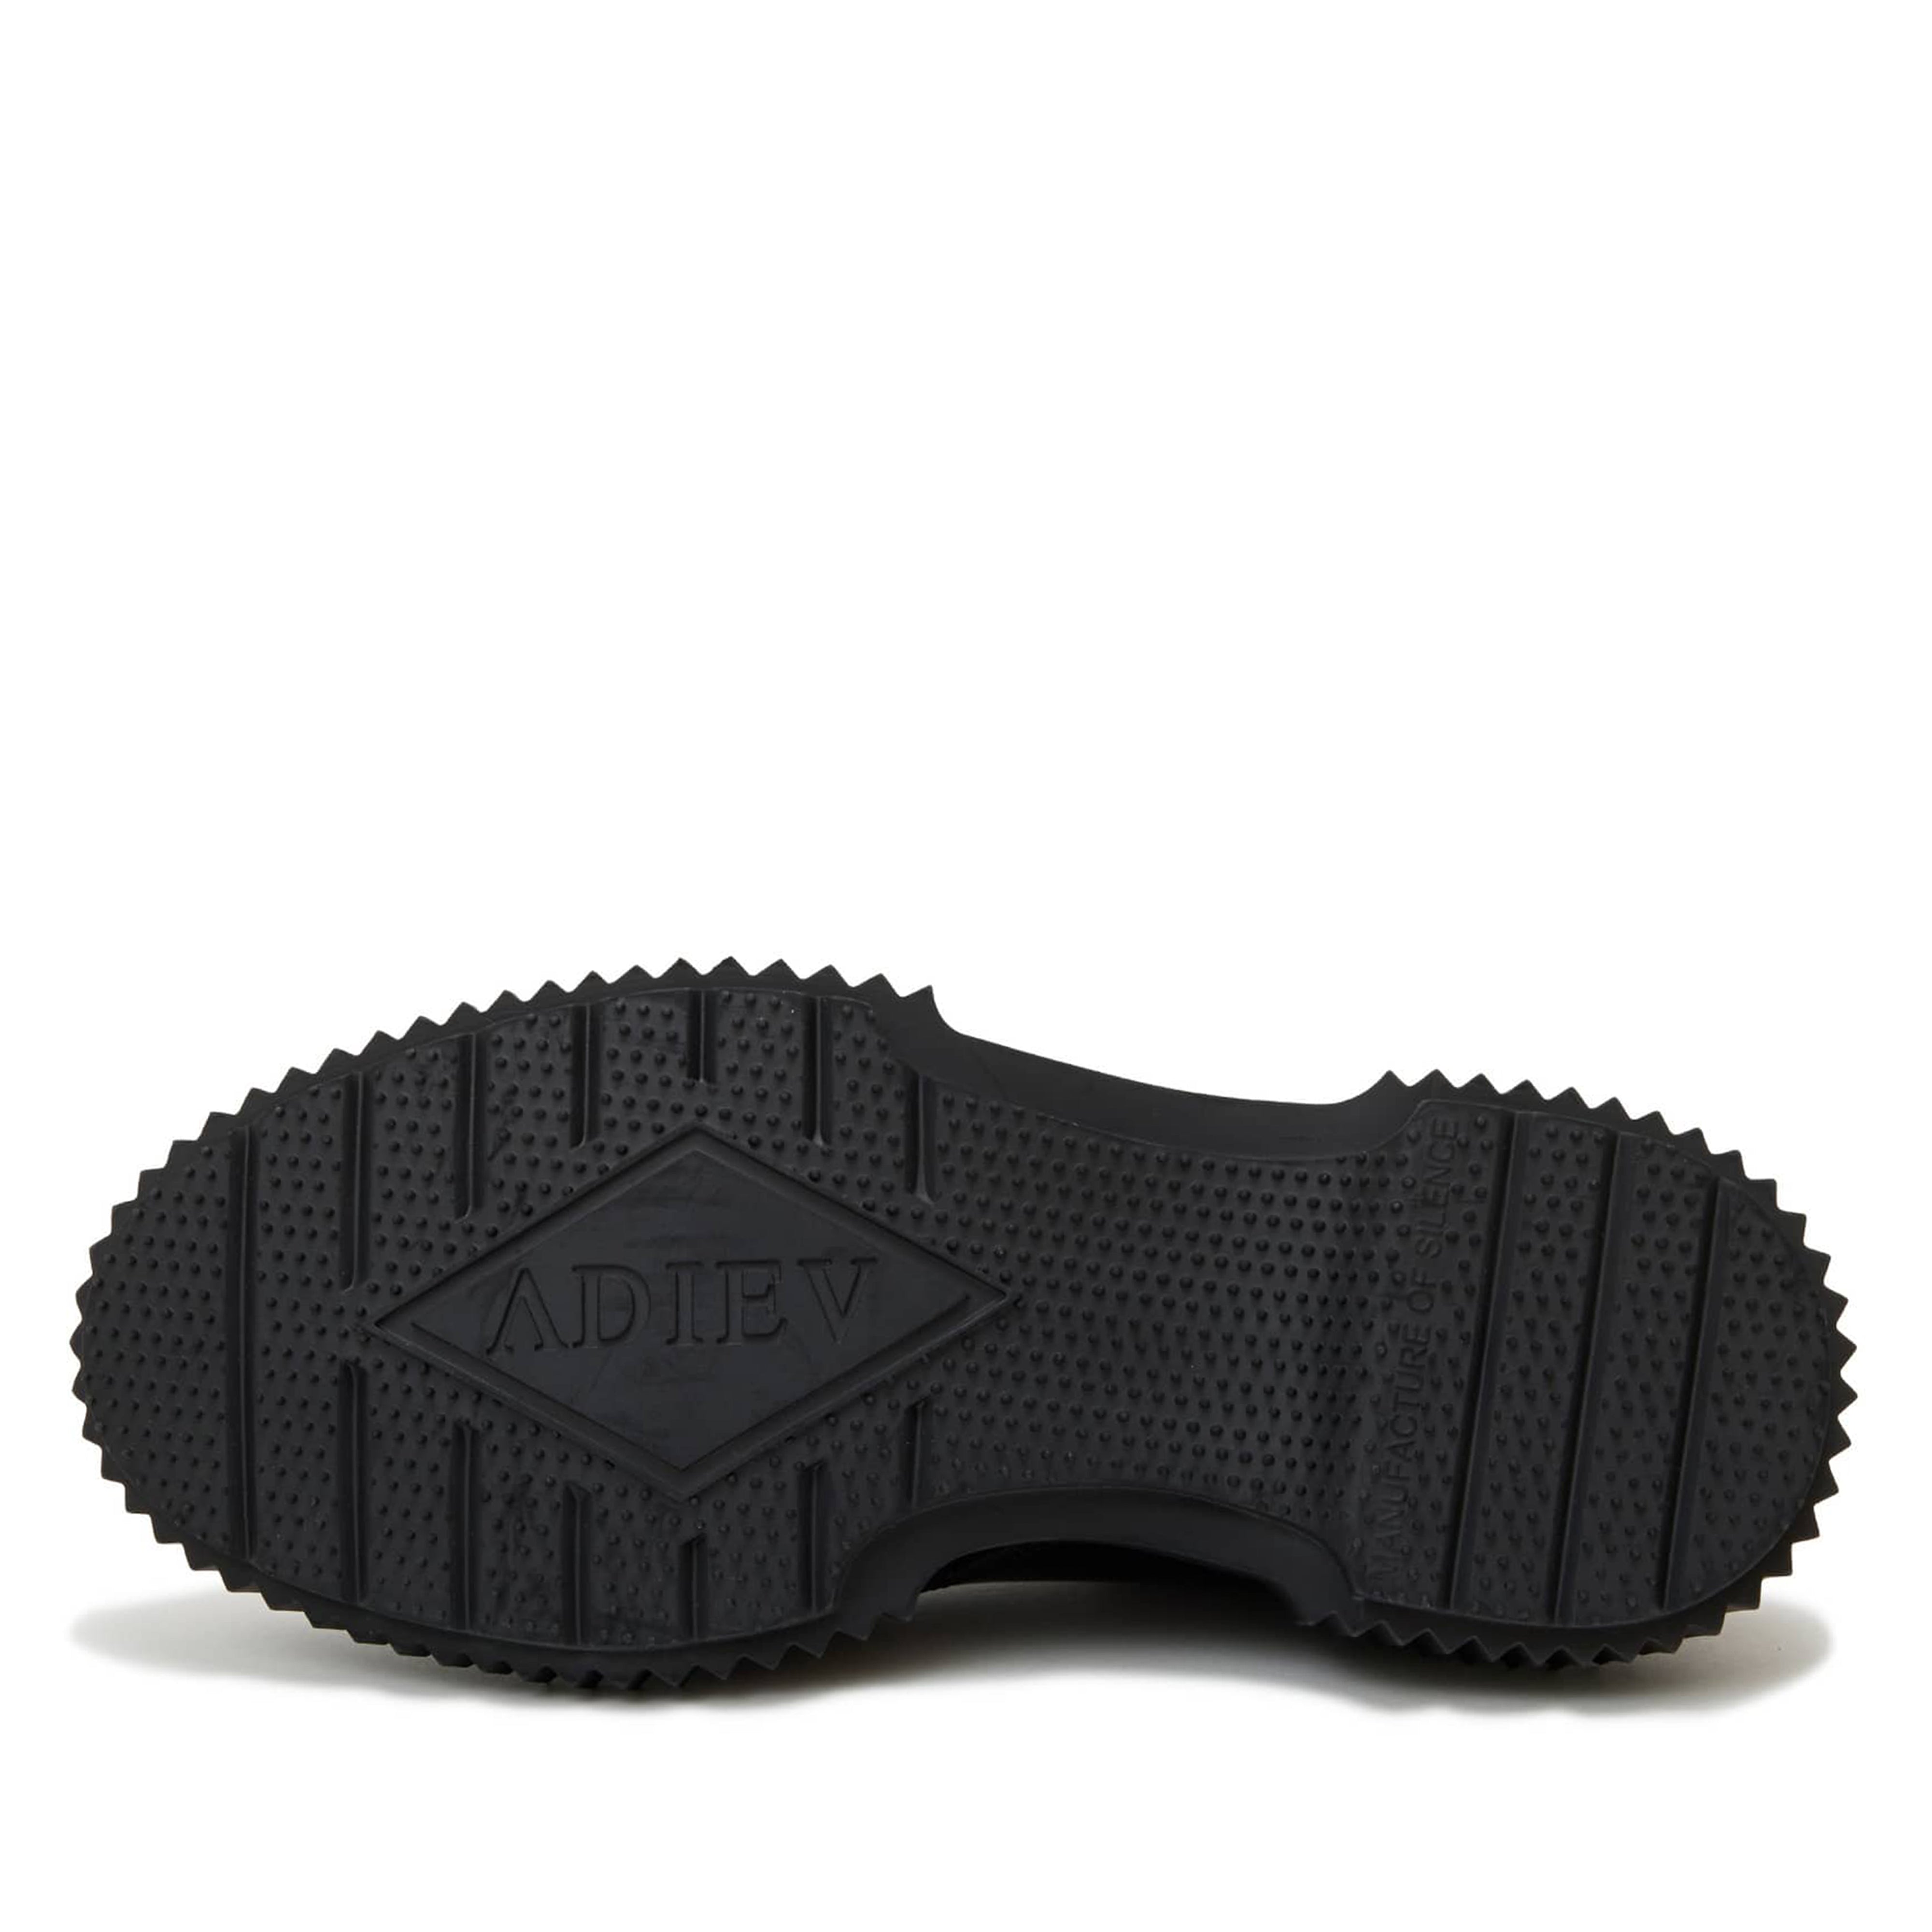 Undercover - Men's Adieu Type 195 Shoe - (Black/Ivory) – DSMNY E-SHOP